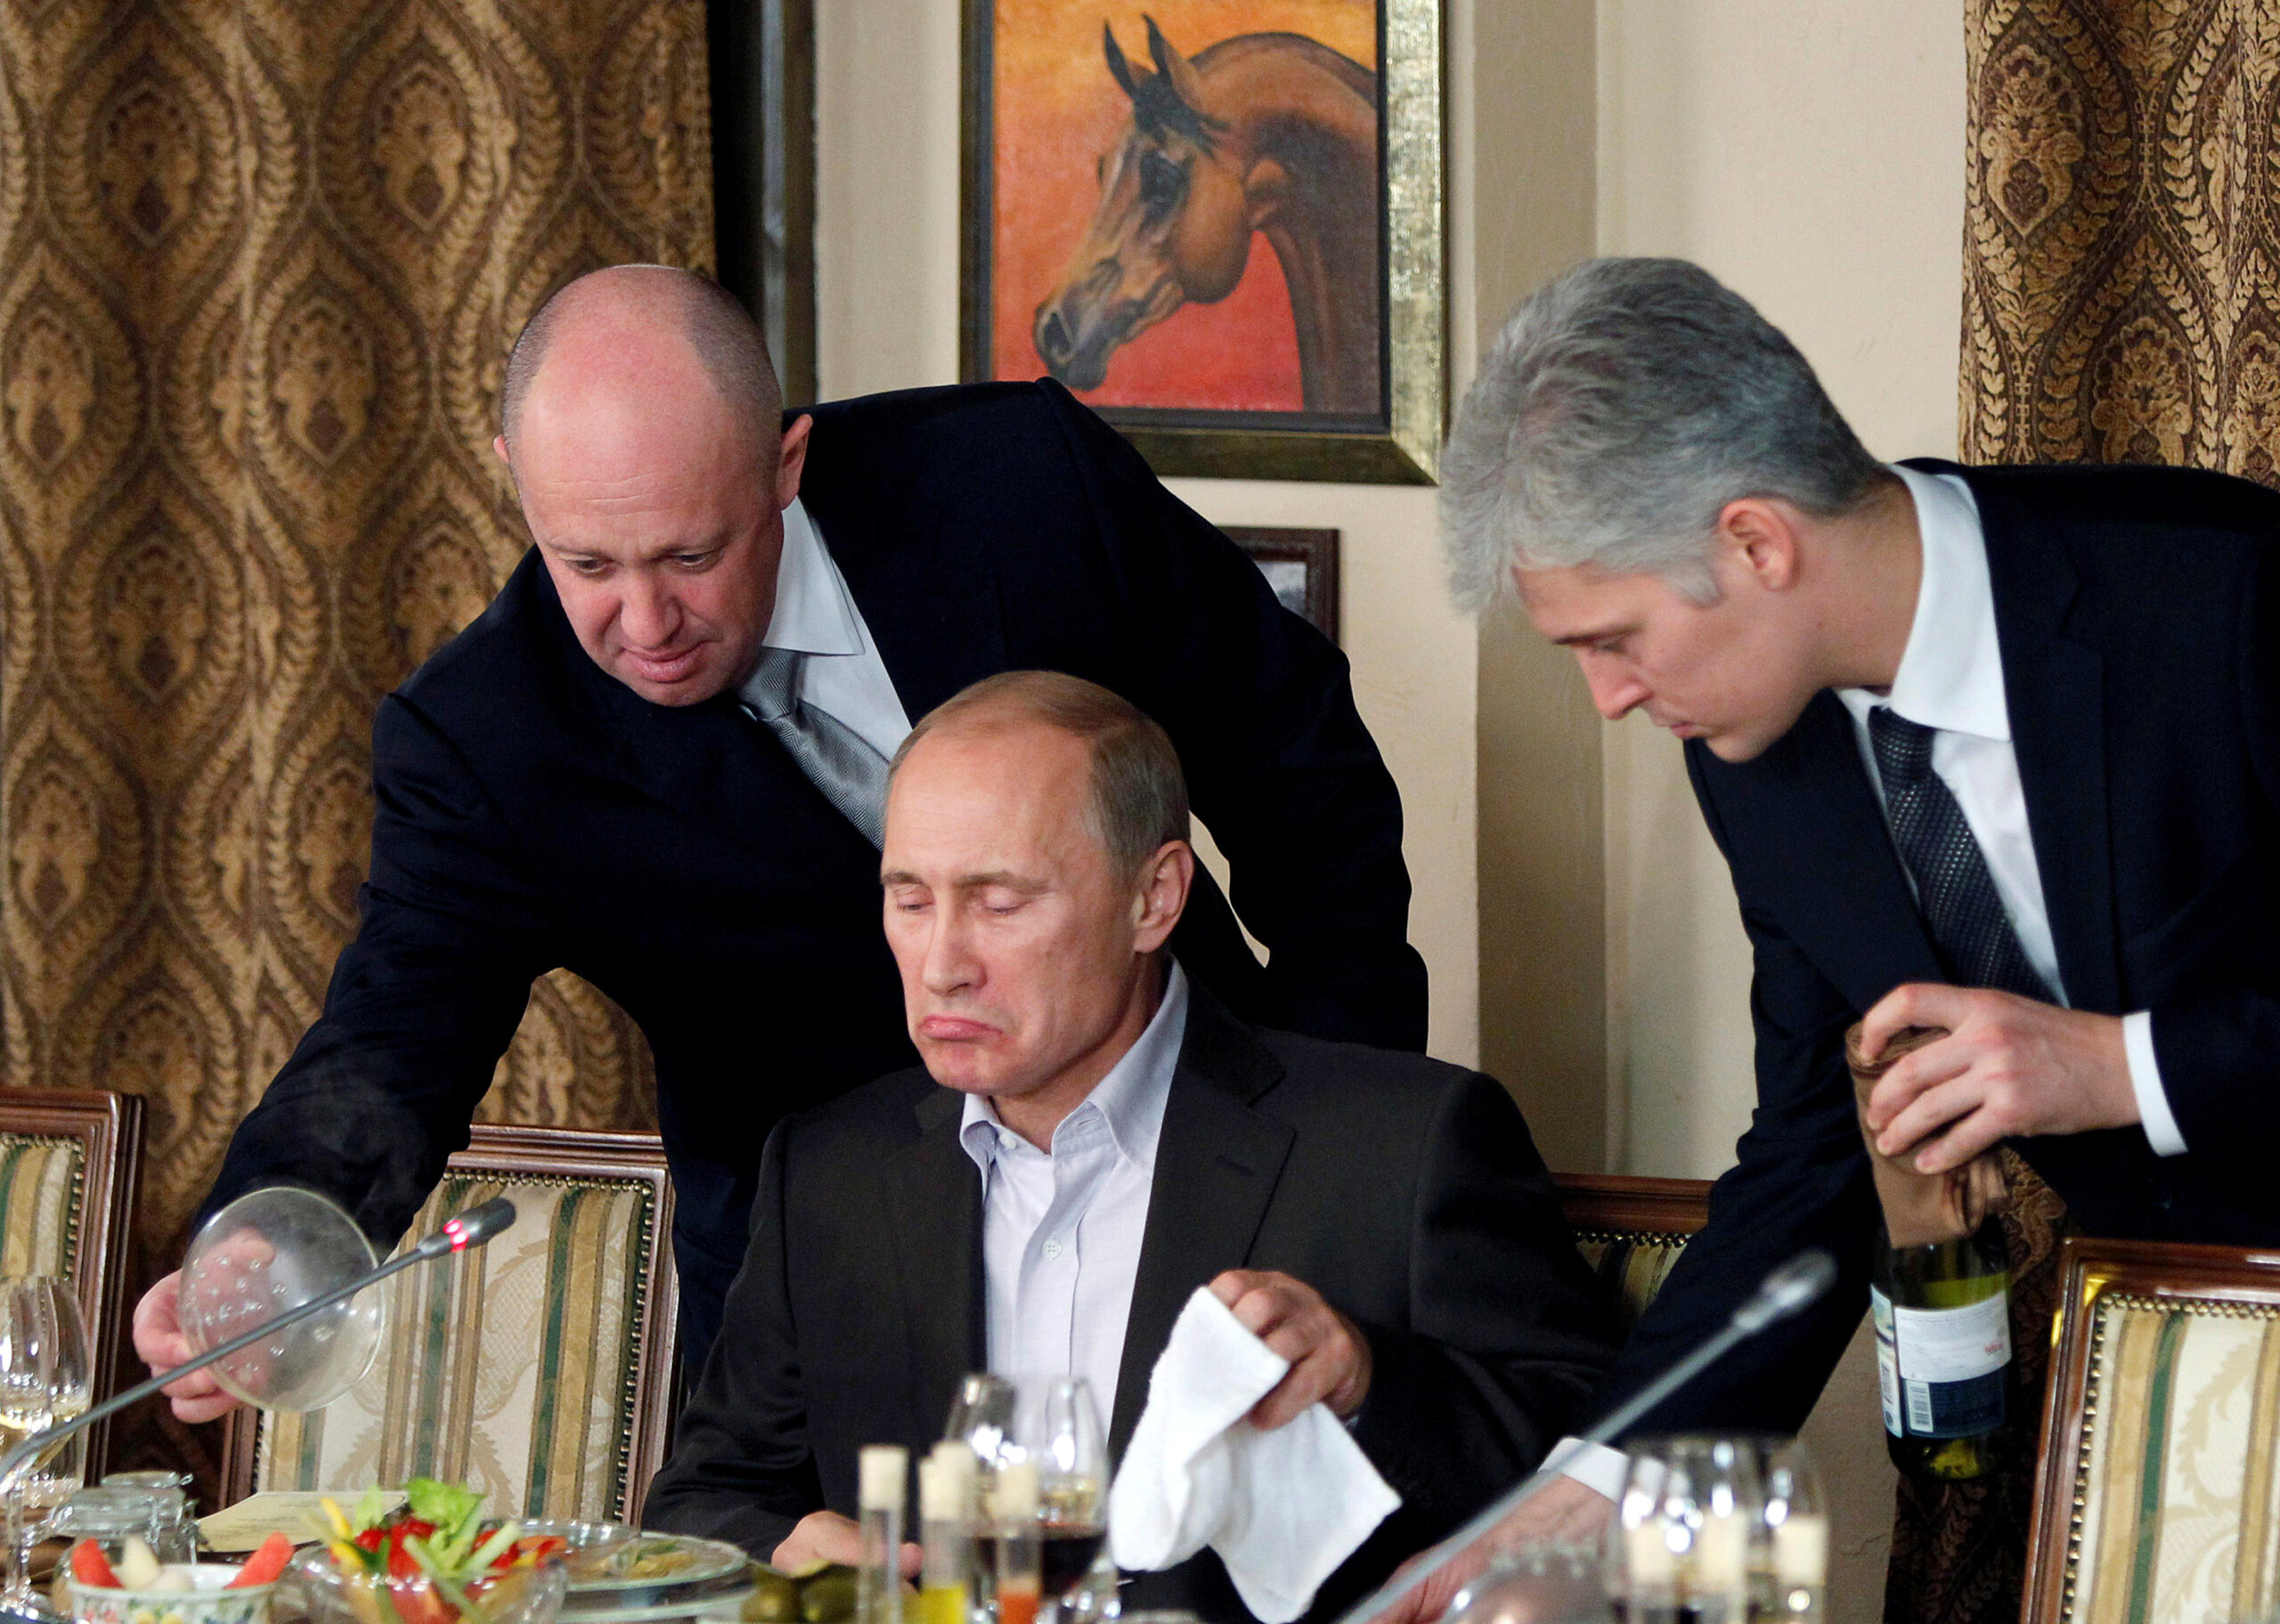 Евгений Пригожин (слева) и Владимир Путин на обеде с журналистами. Фото REUTERS/Misha Japaridze/Pool/File Photo/File Photo/Scanpix/Leta